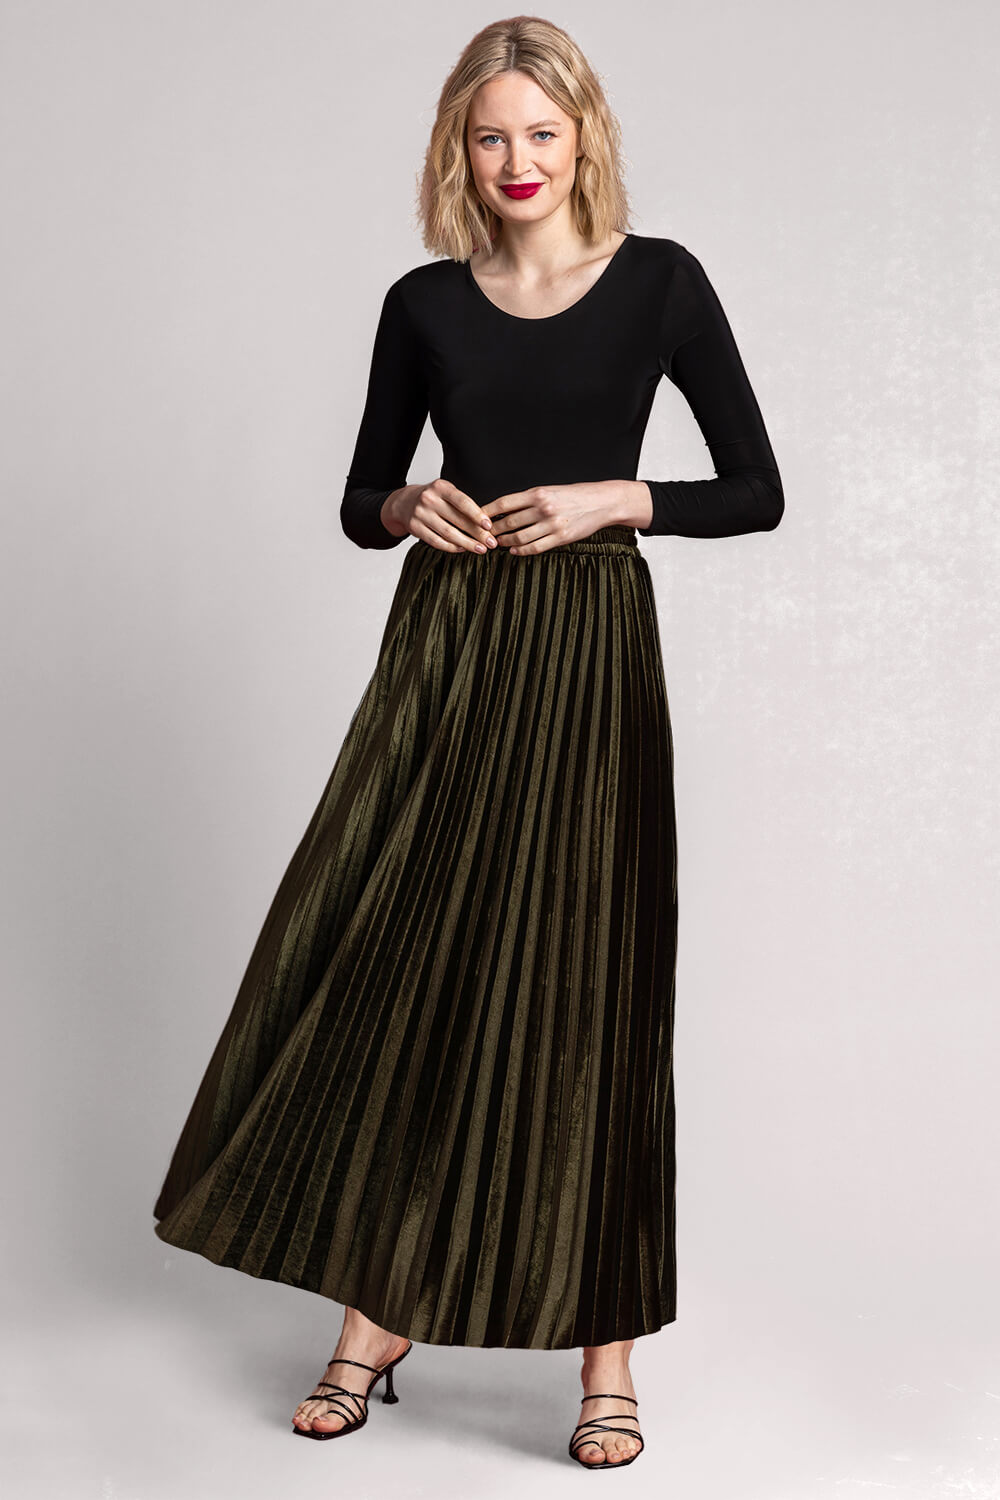 Olive Velour Pleated Midi Skirt, Image 3 of 5